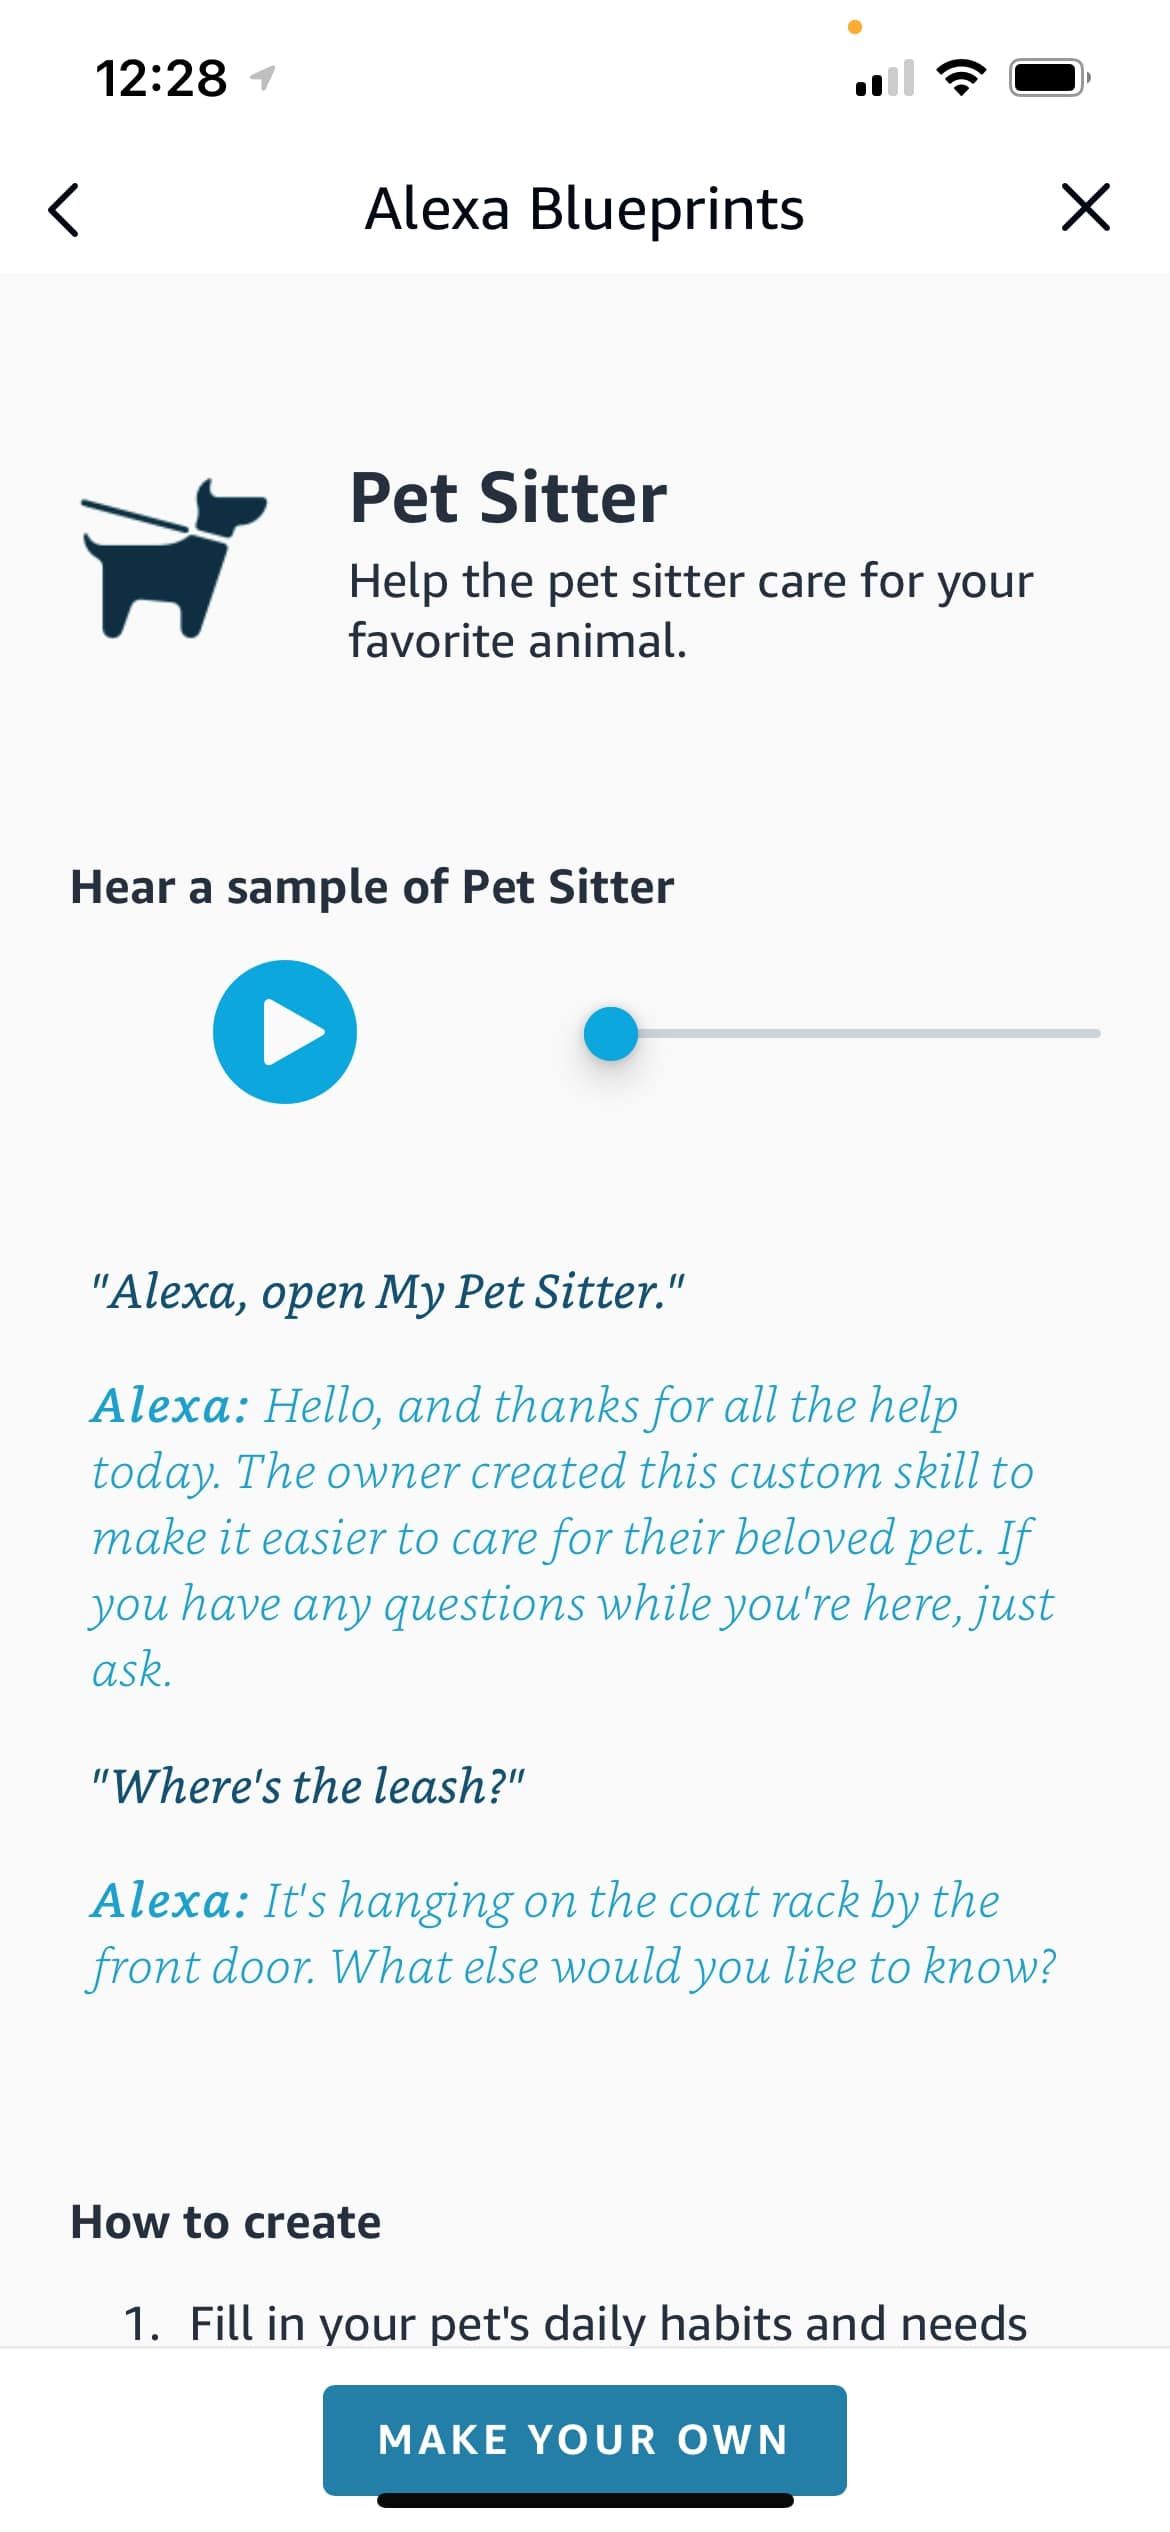 Pet Sitter Blueprint main page